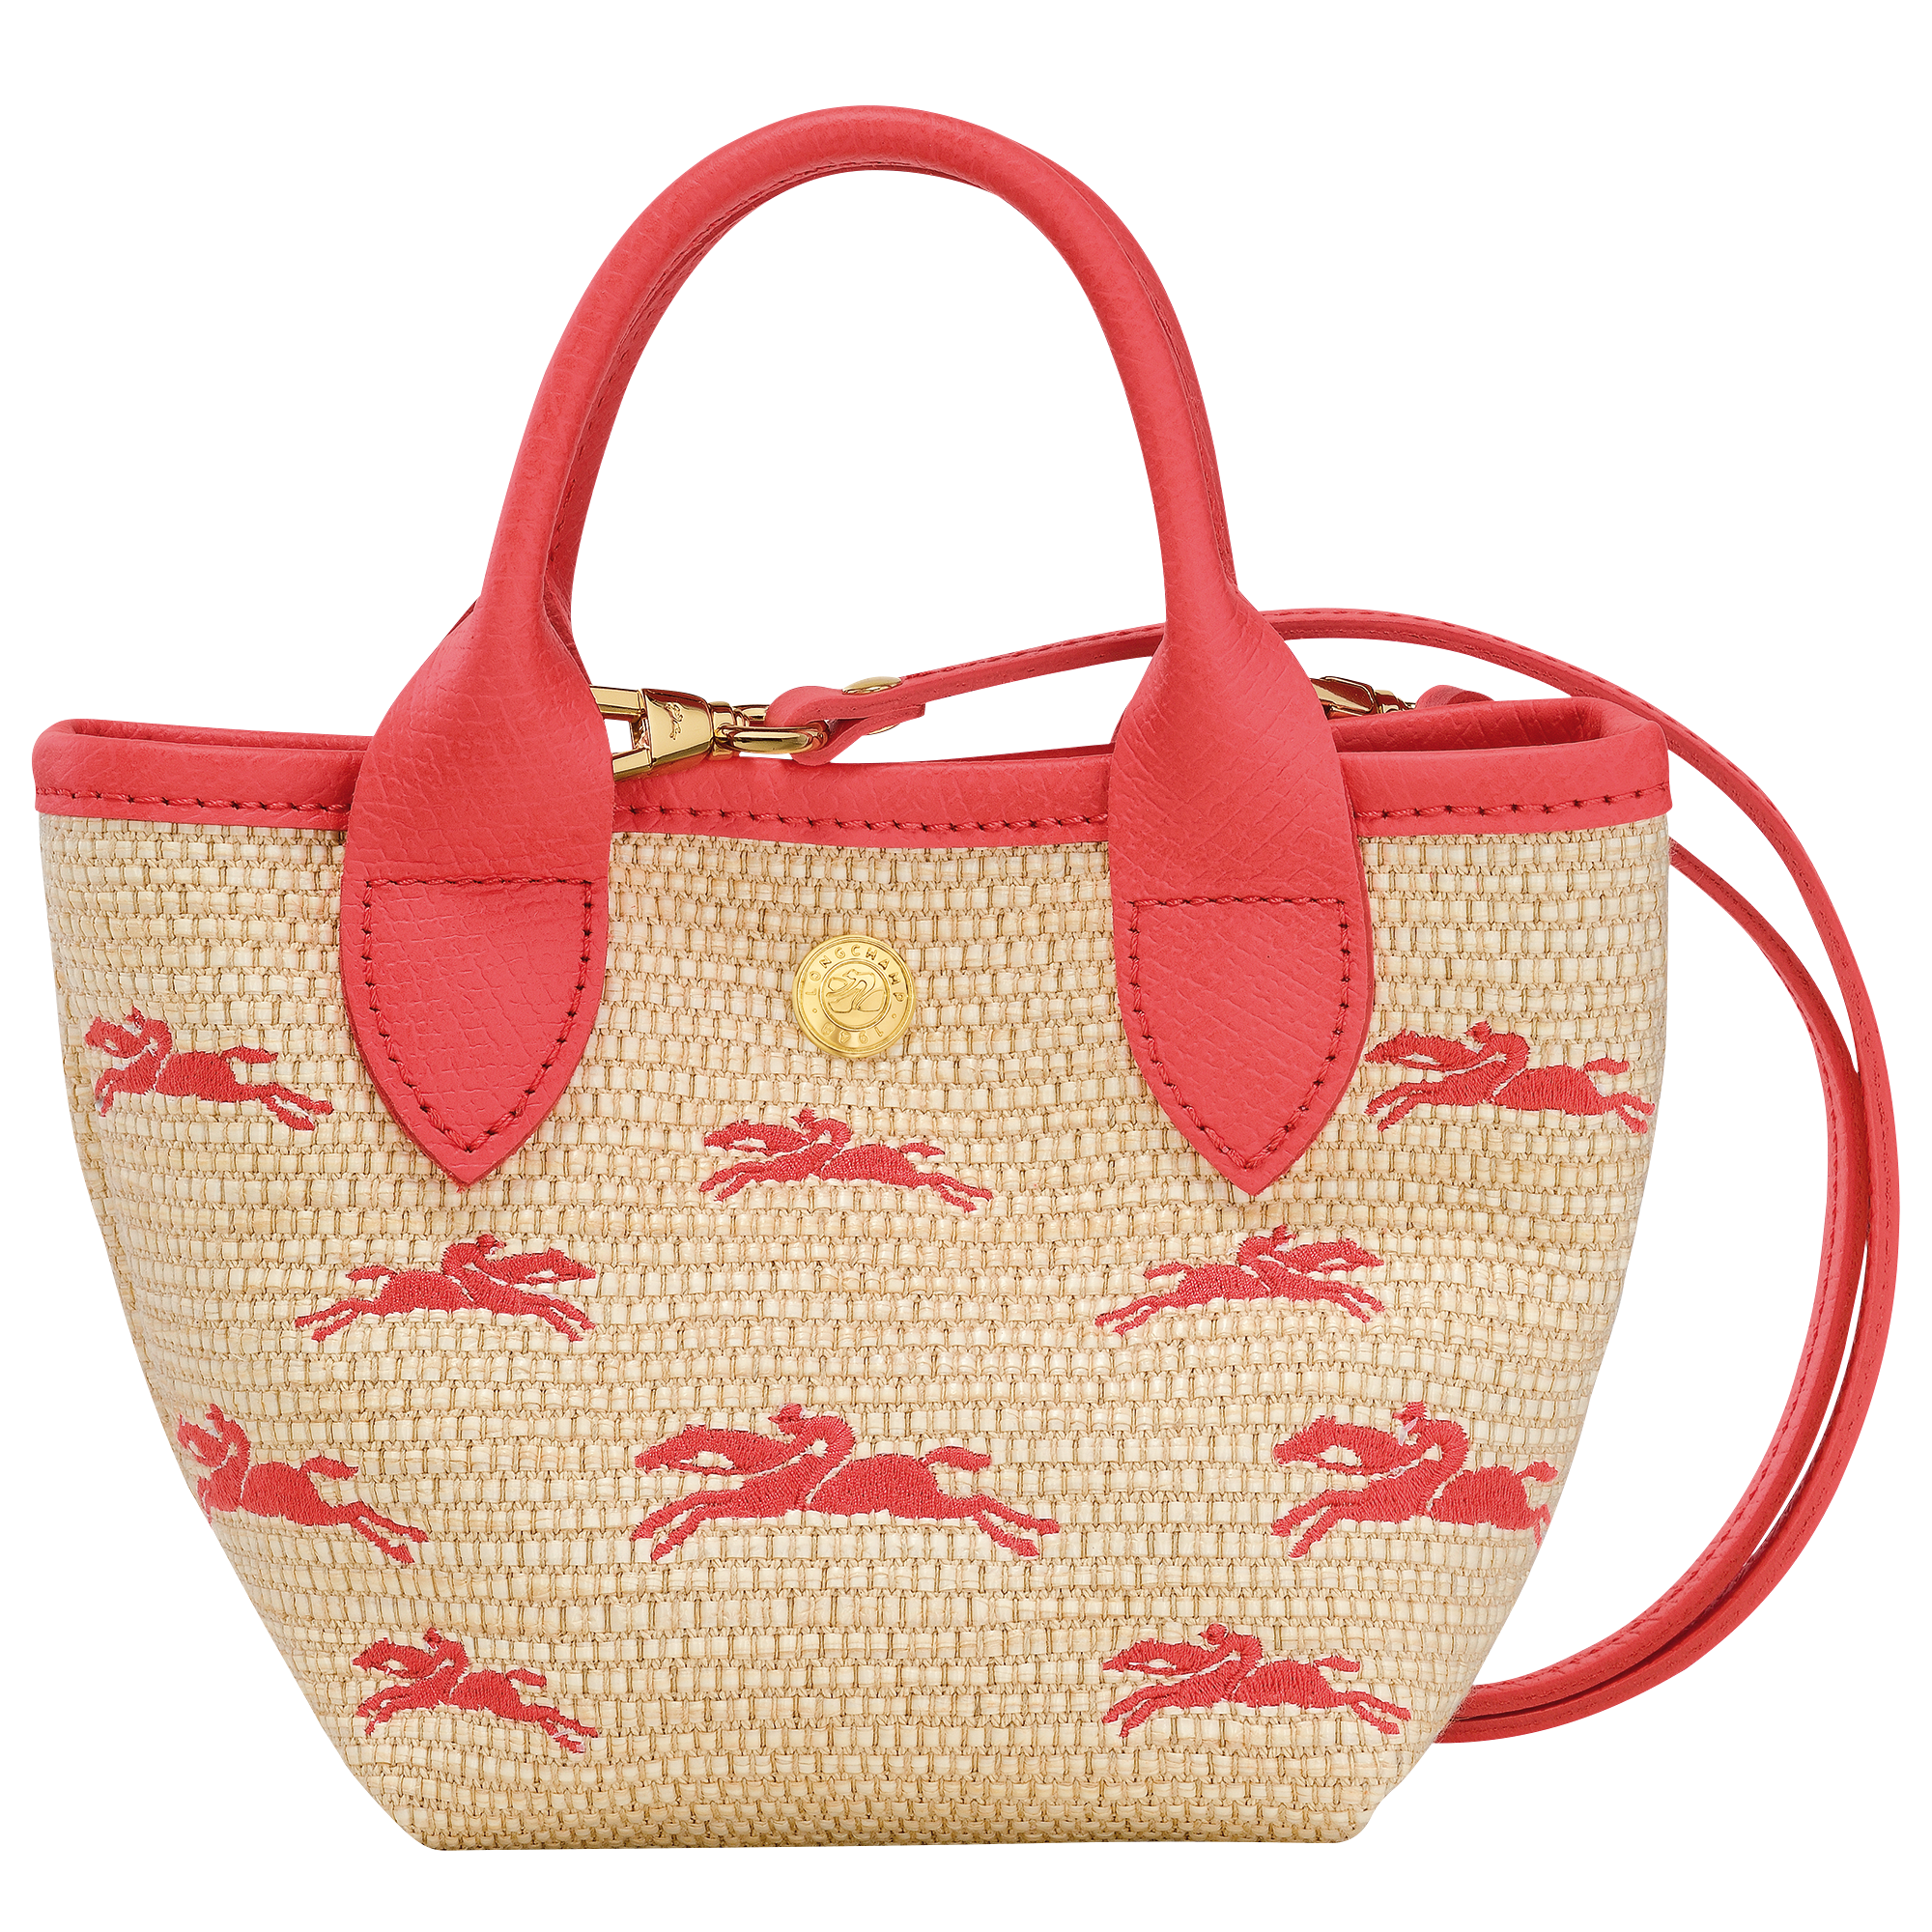 Le Panier Pliage Handtasche S, Erdbeere